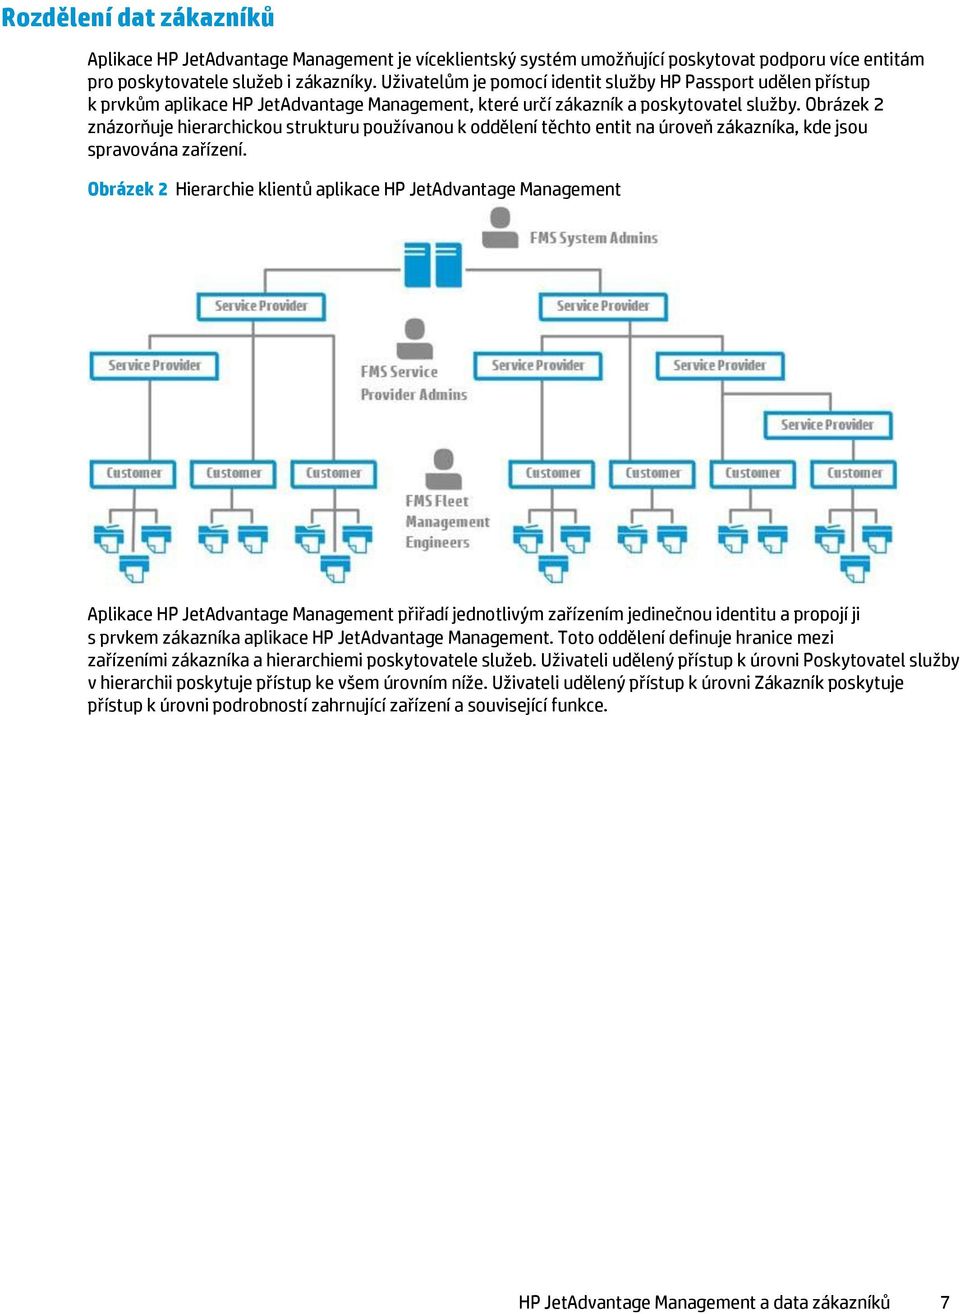 Obrázek 2 znázorňuje hierarchickou strukturu používanou k oddělení těchto entit na úroveň zákazníka, kde jsou spravována zařízení.